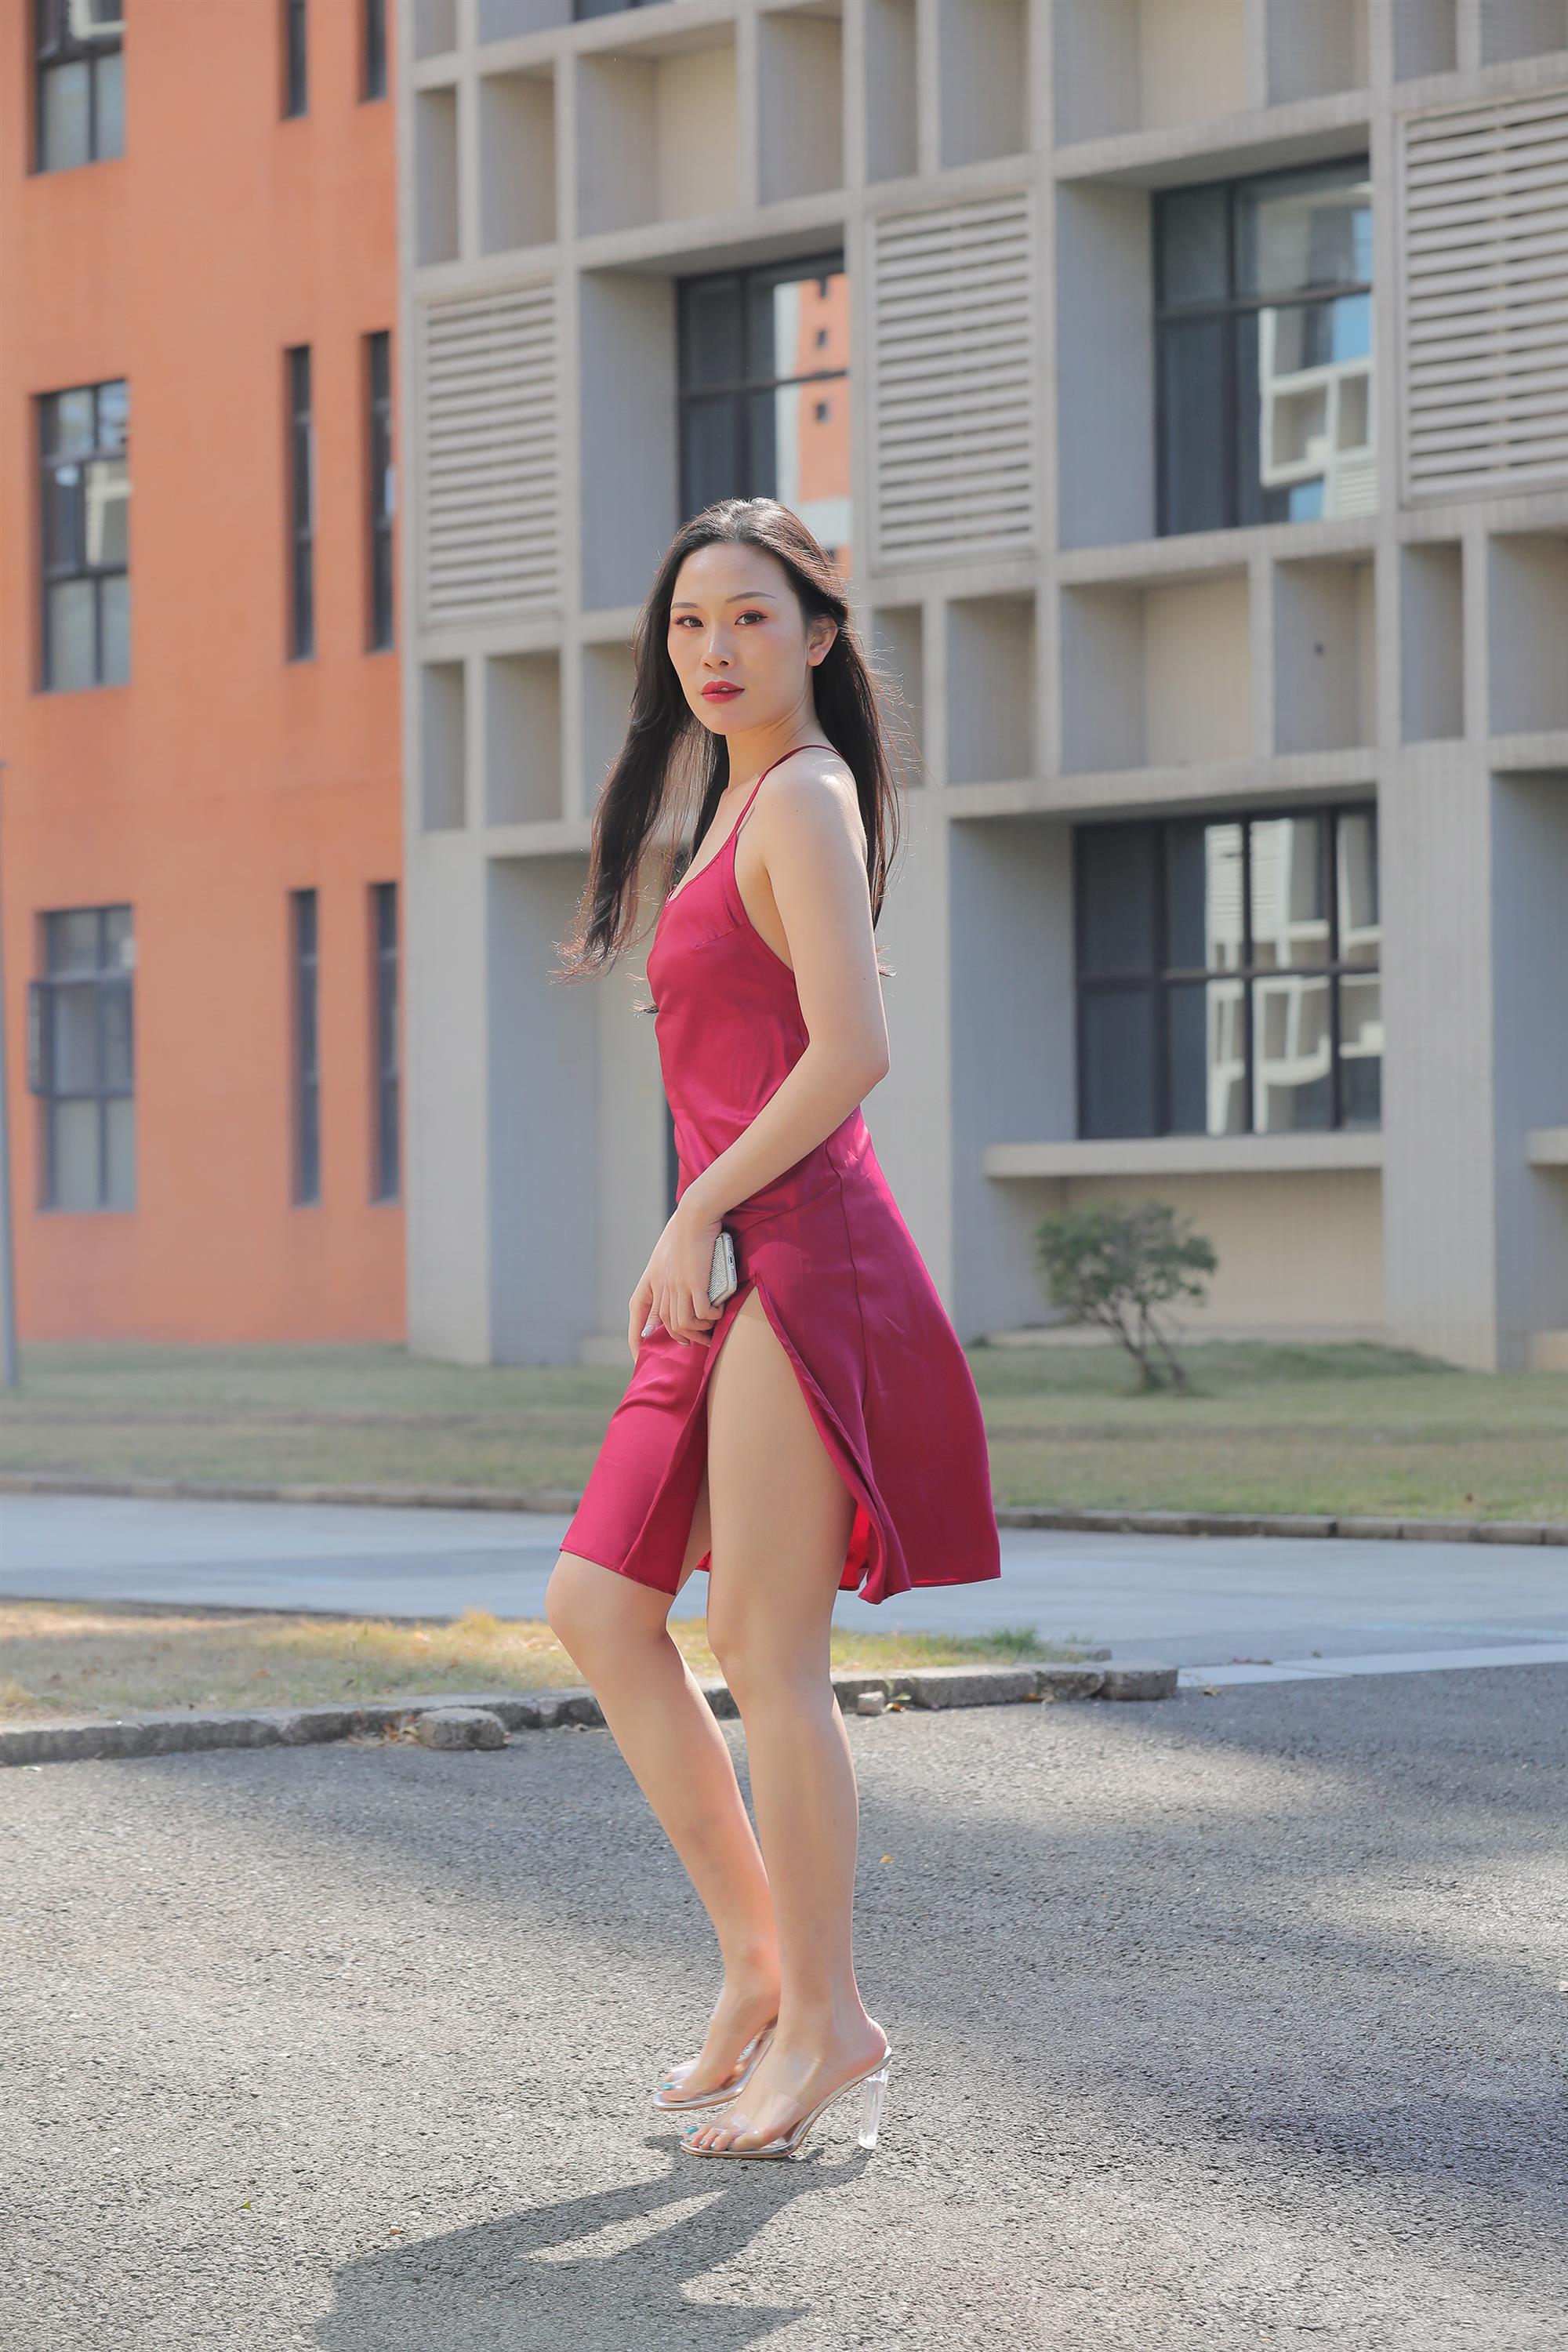 Street beauty in a red dress - 27.jpg